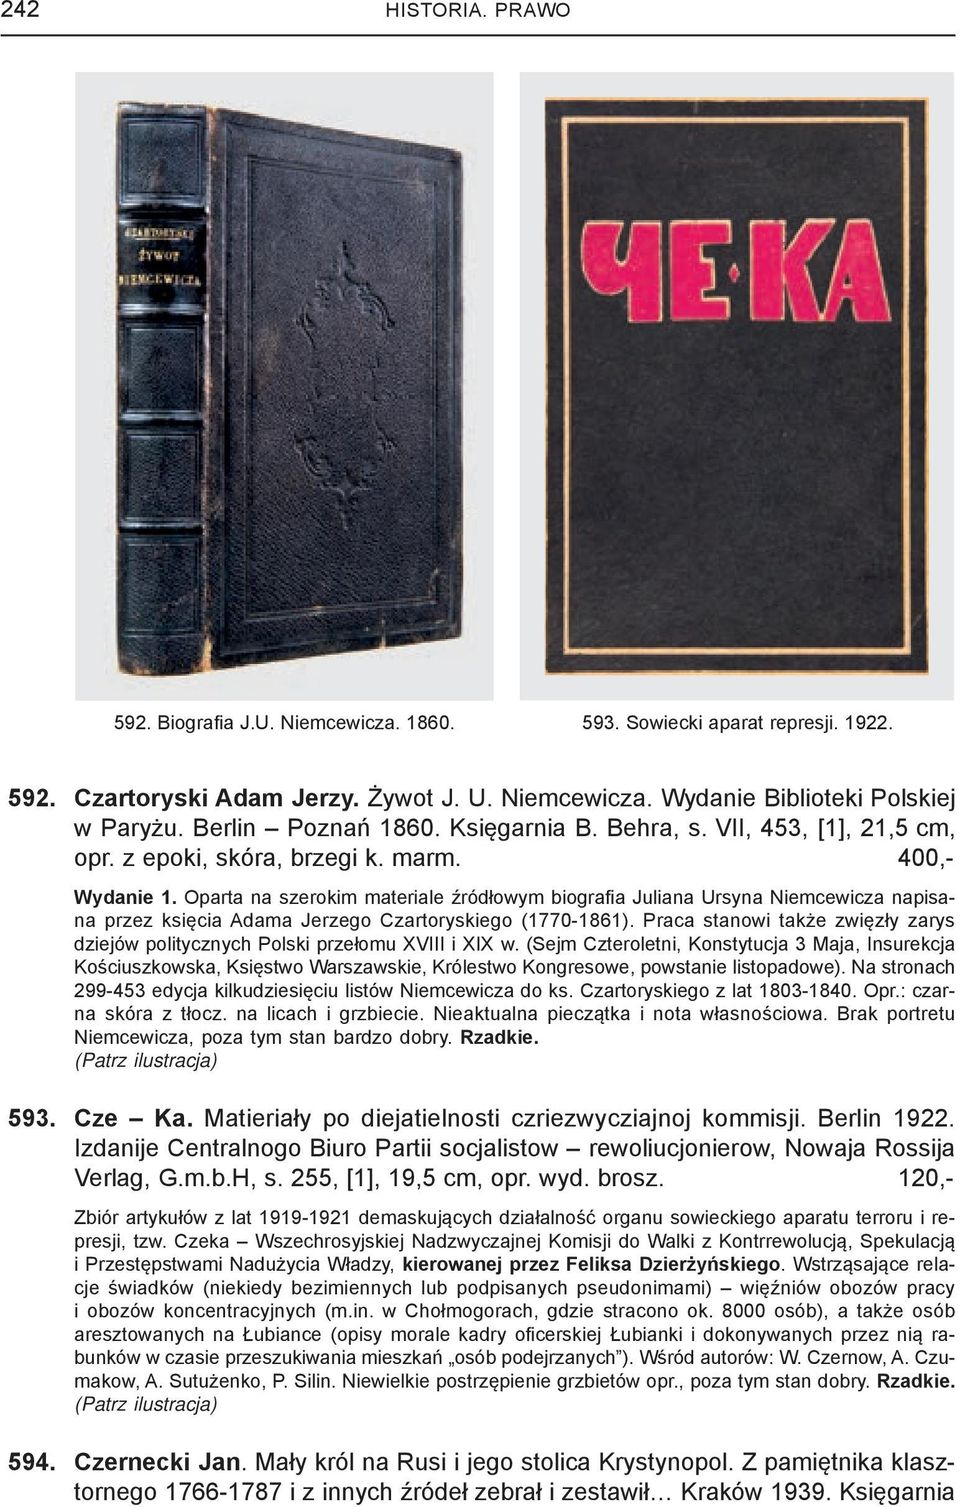 Oparta na szerokim materiale źródłowym biografi a Juliana Ursyna Niemcewicza napisana przez księcia Adama Jerzego Czartoryskiego (1770-1861).